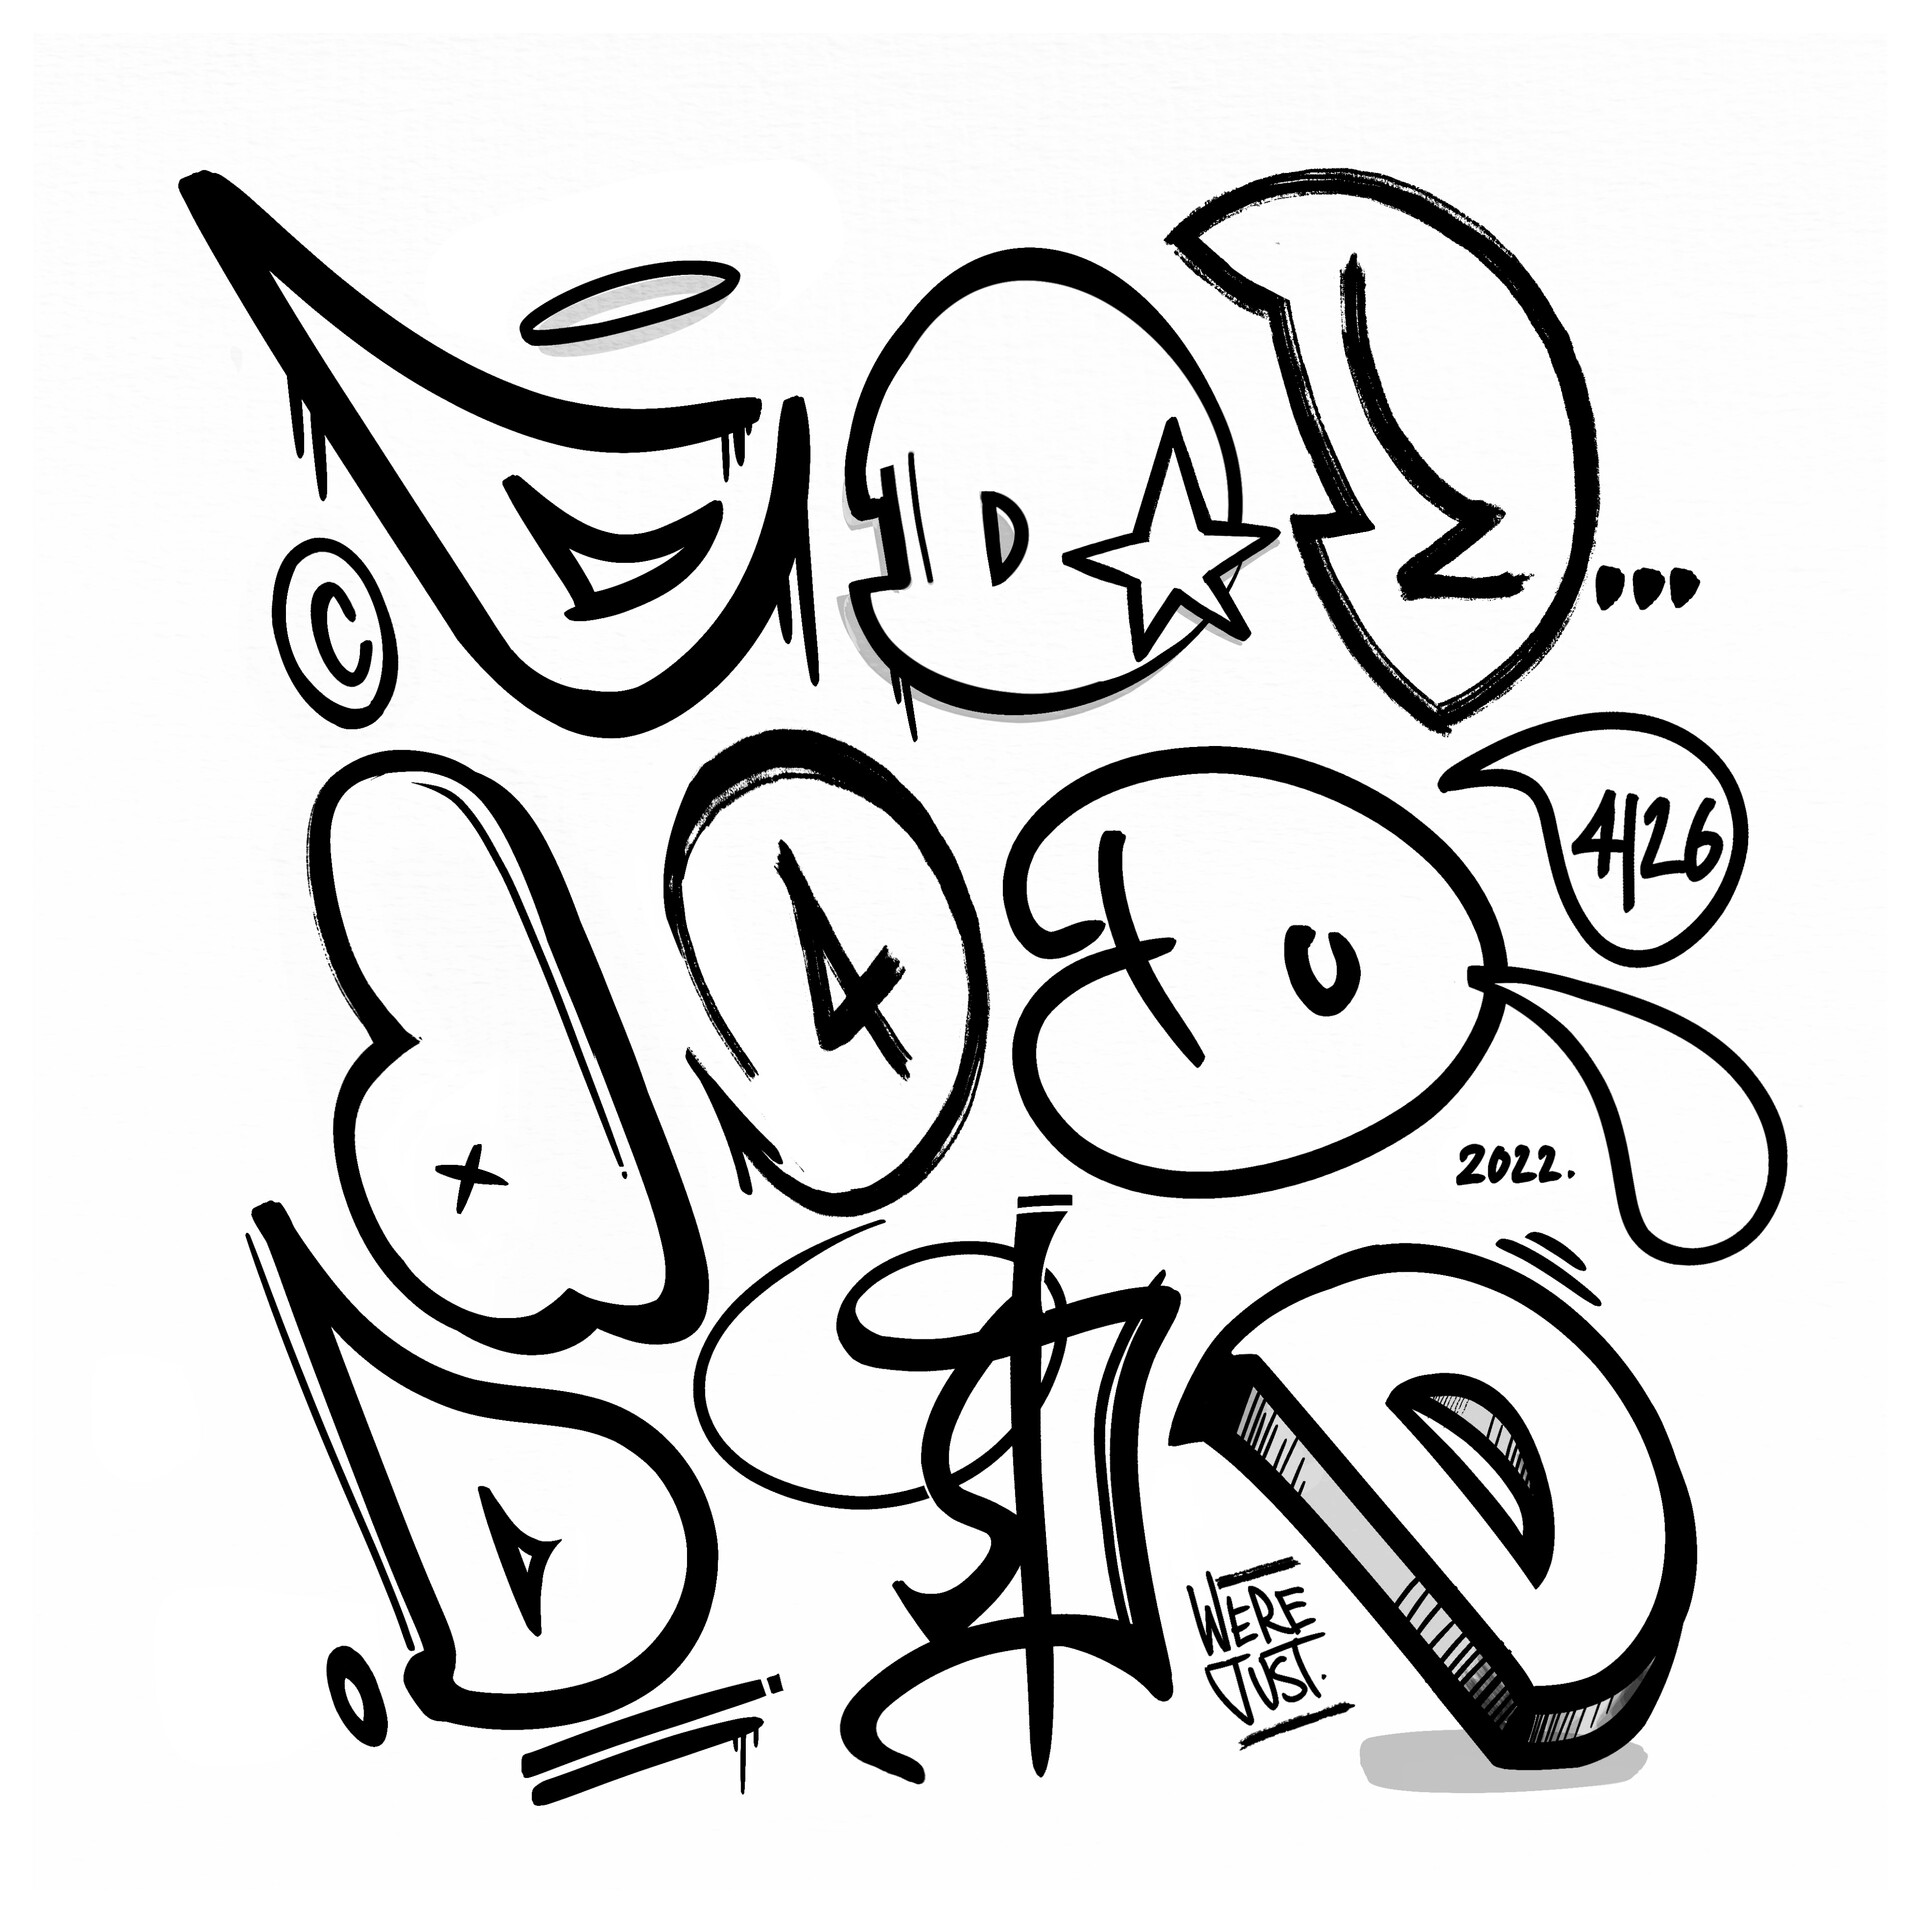 letter d in graffiti